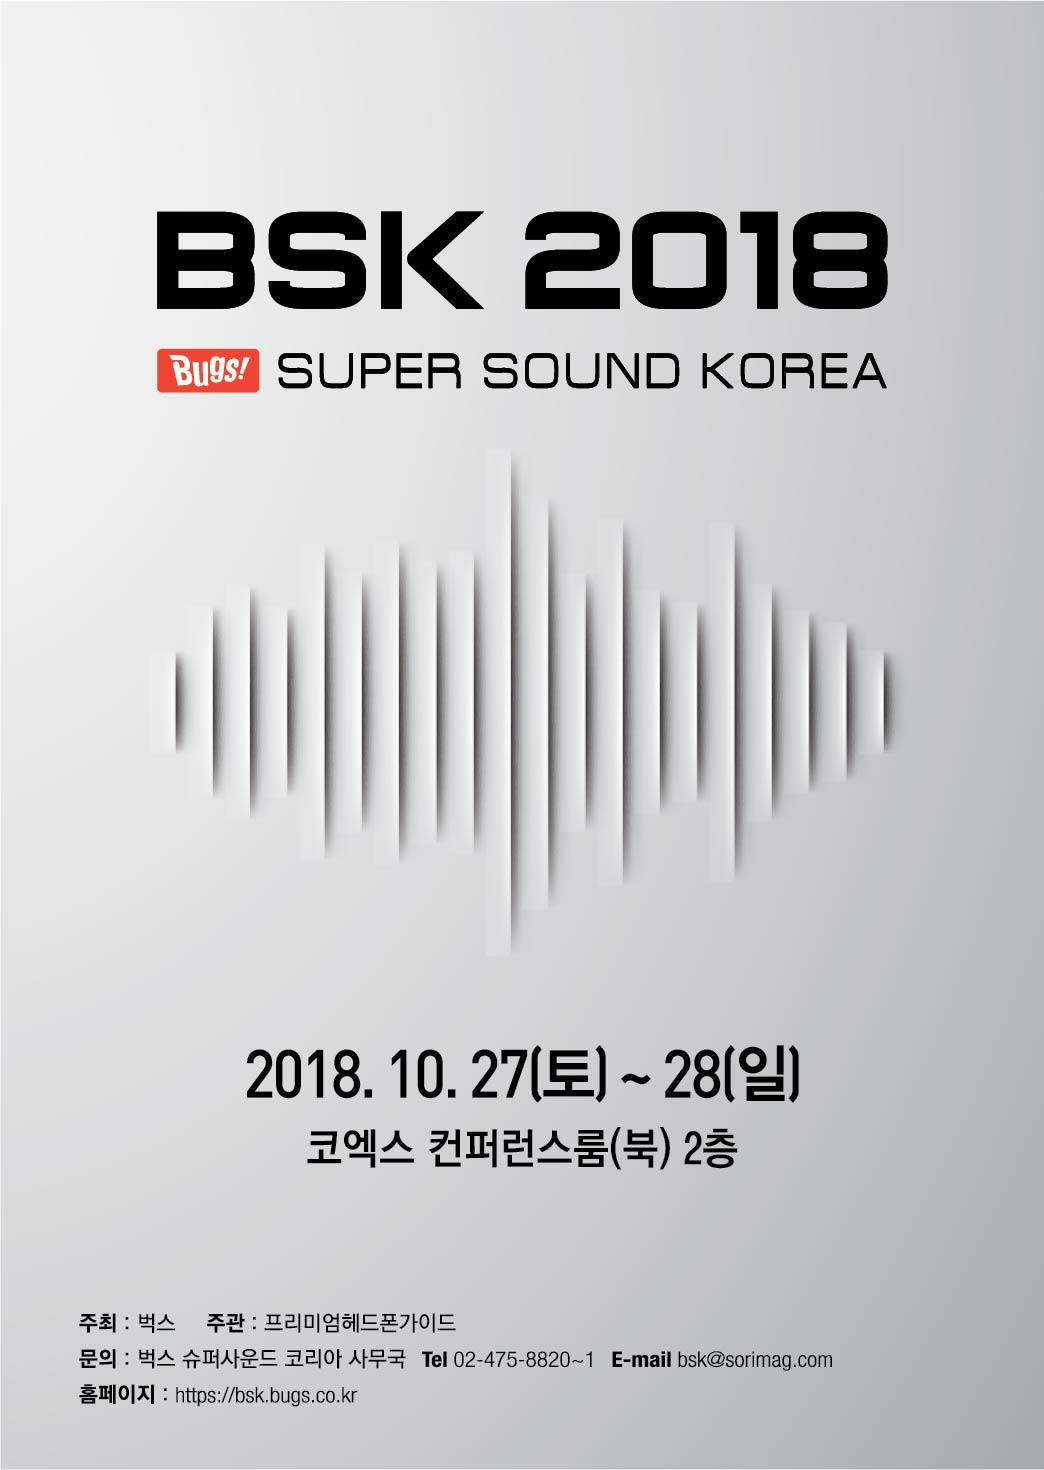 [NHN벅스_이미지] 'BSK 2018' 포스터.jpg